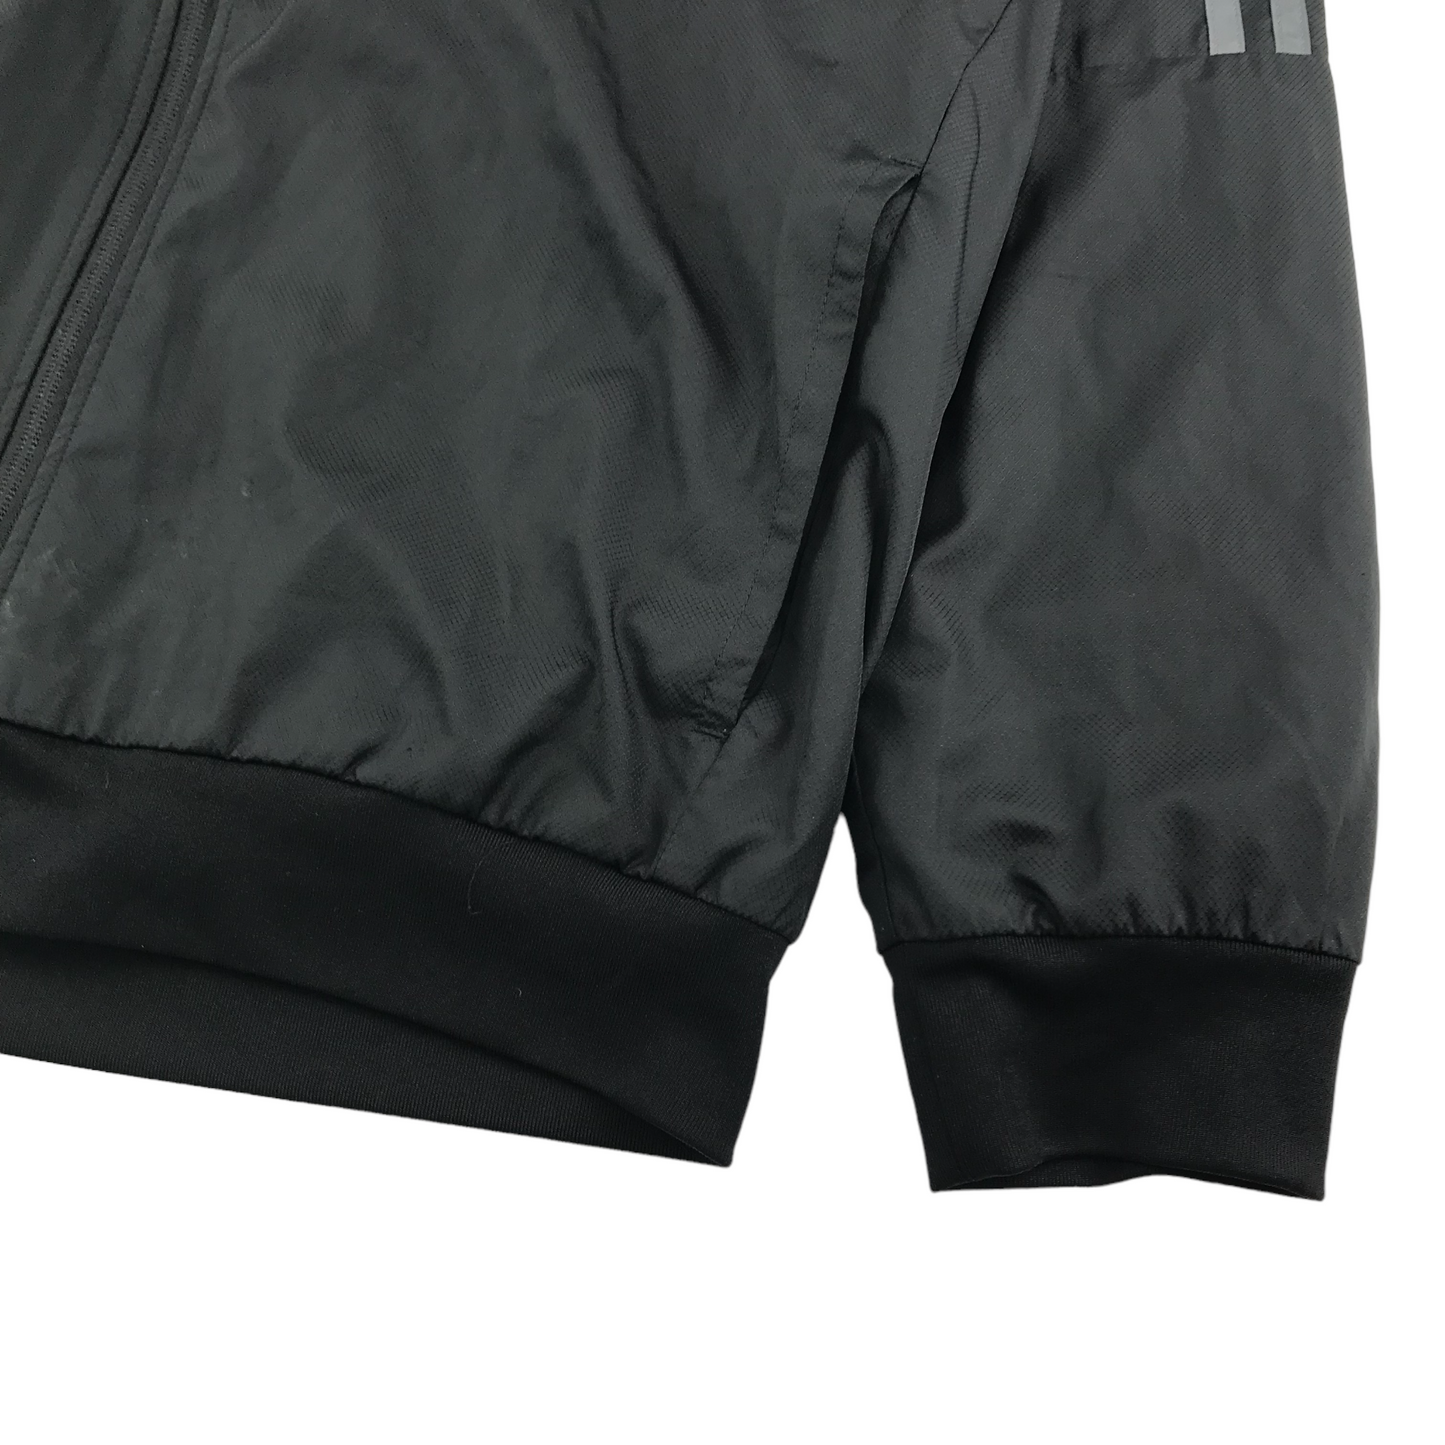 Adidas Windbreaker Jacket Women Size 38 Black Grey Light Sporty